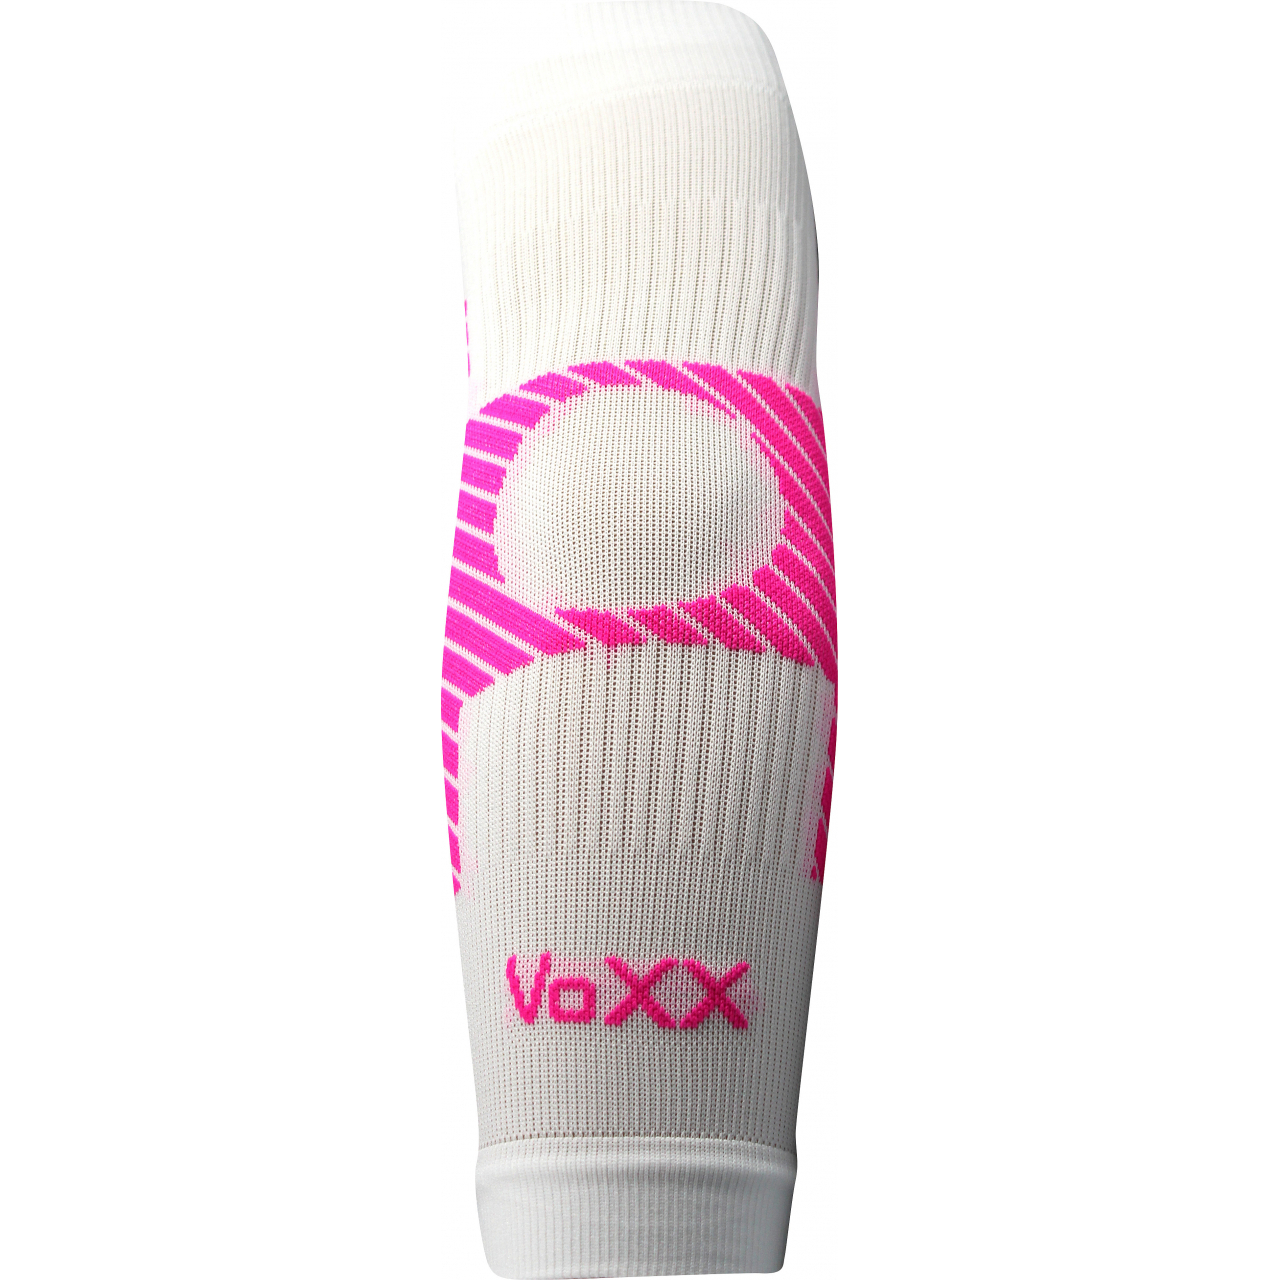 Návlek kompresní Voxx Protect loket - bílý-růžový, L/XL